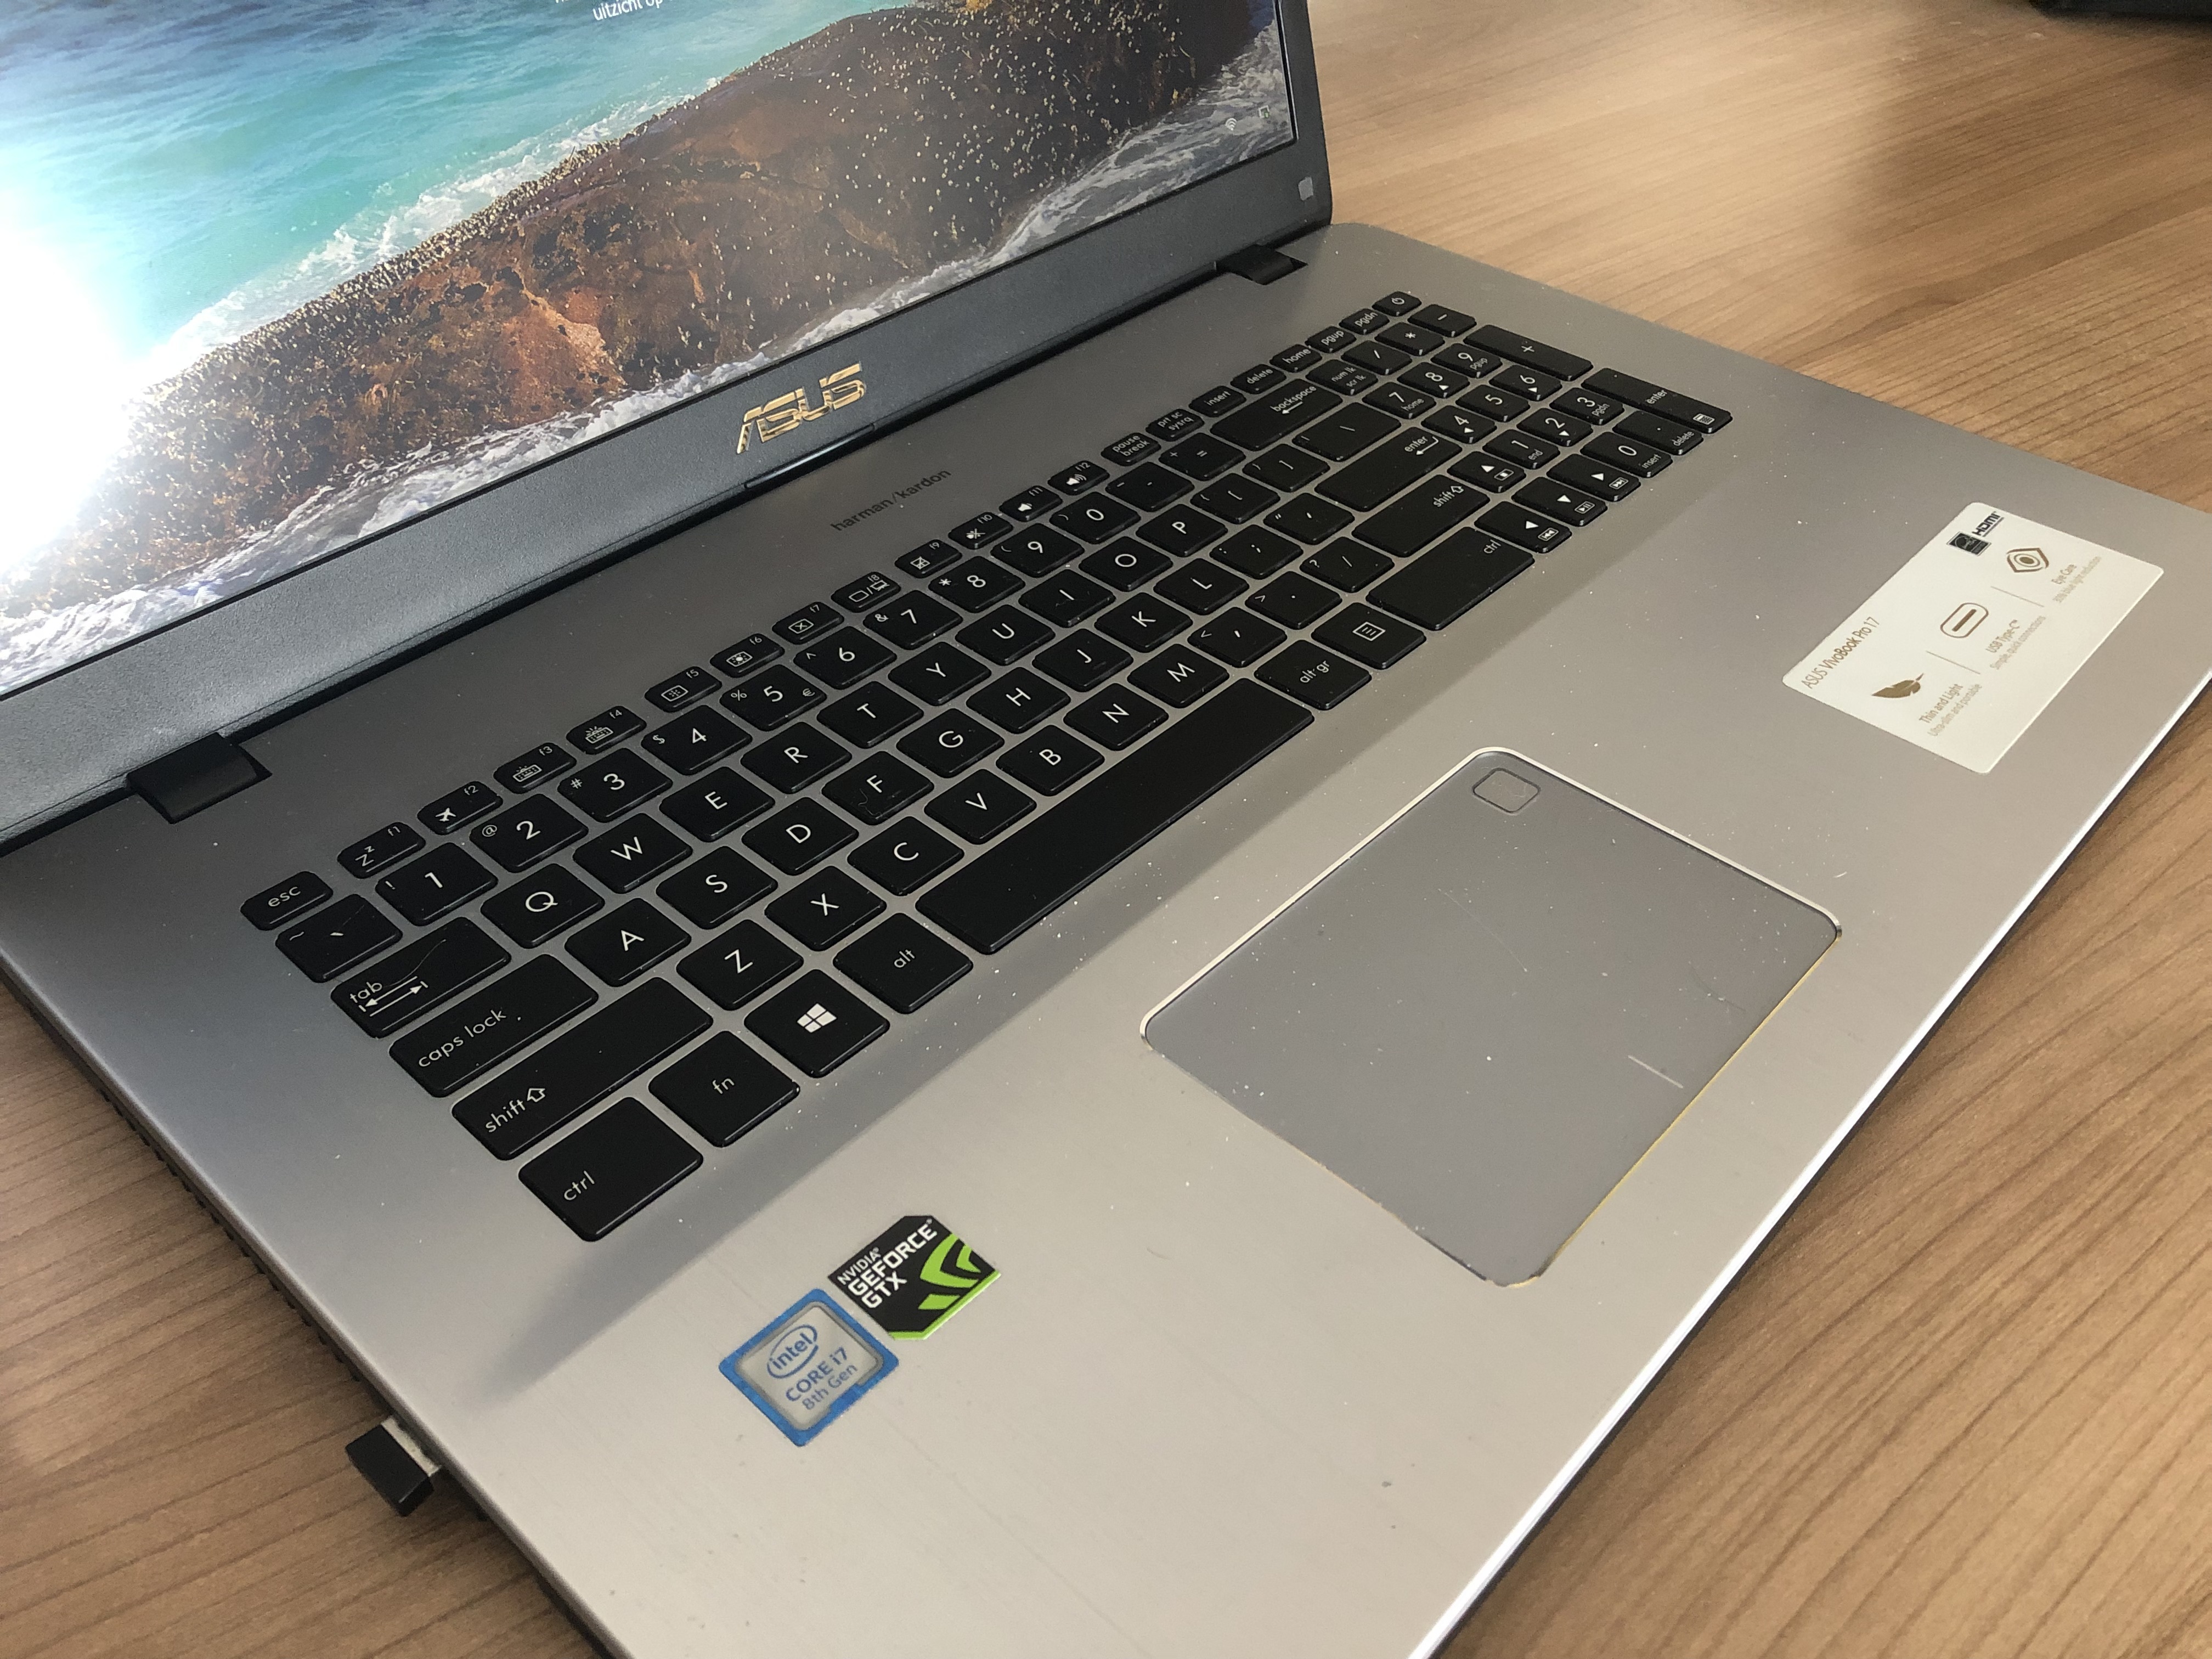 efficiëntie Kikker Hoeveelheid geld Tweedehands laptop kopen: Waar moet je op letten? | ID.nl